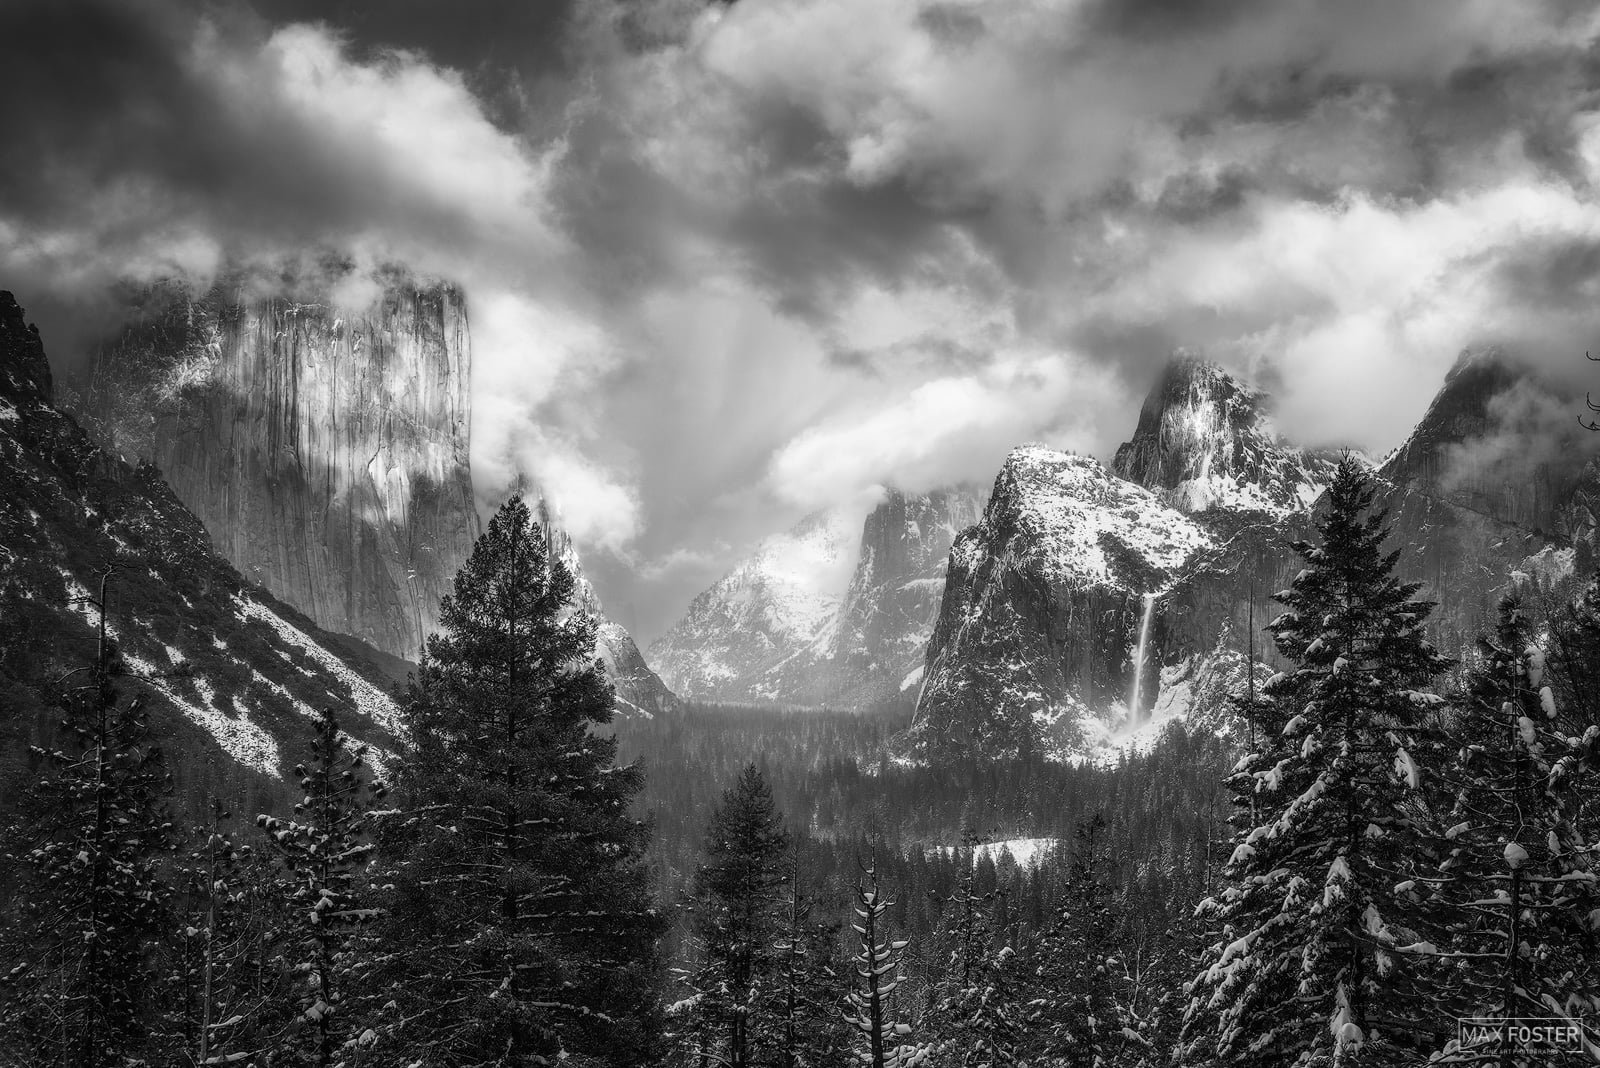 Architettura e paesaggio nella fotografia Ansel Adams Majestic Valley Yosemite National Park